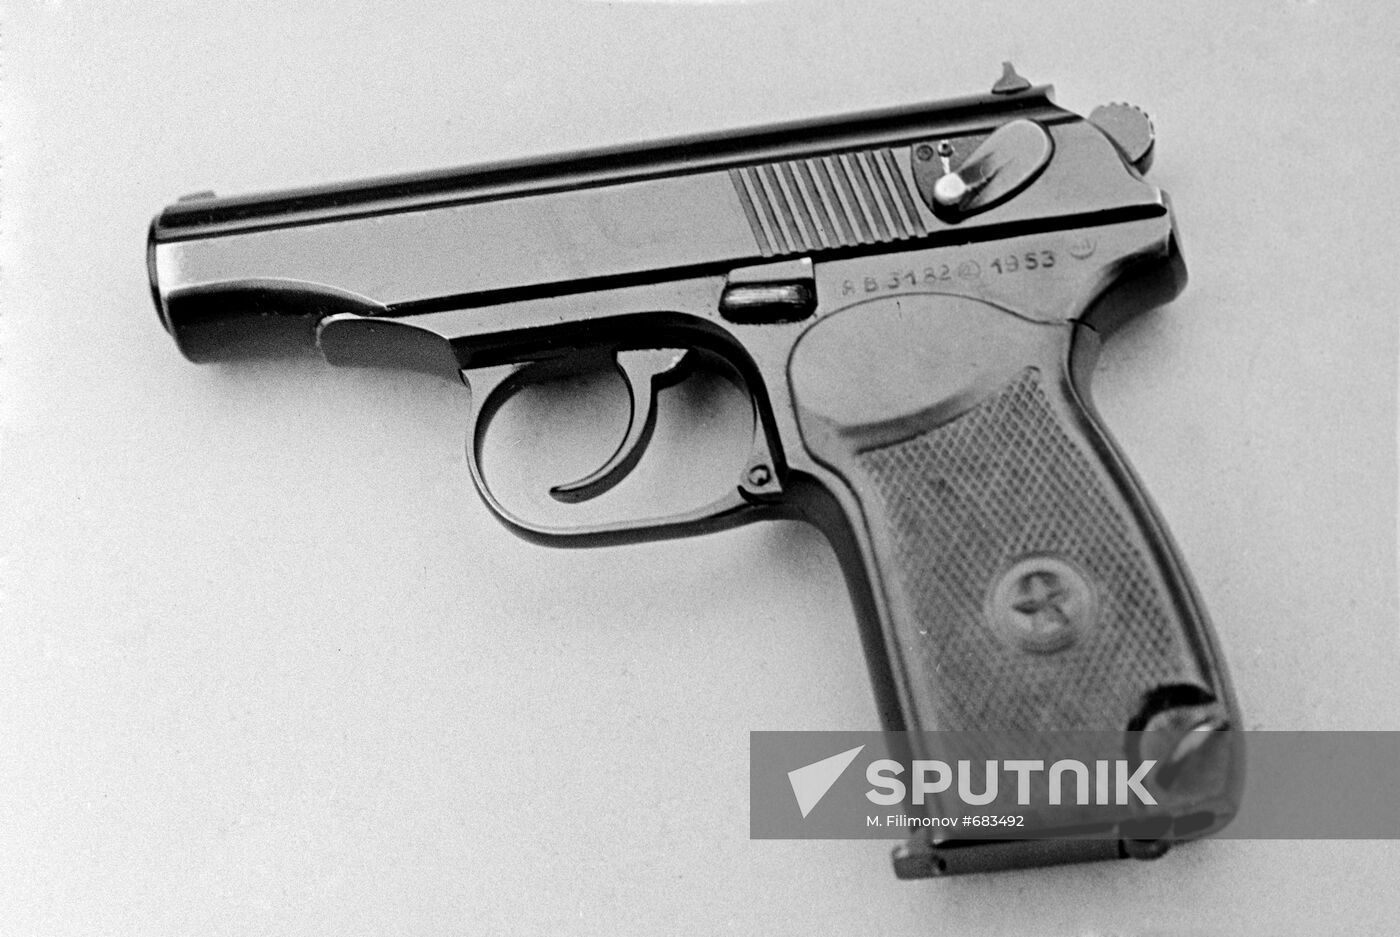 Makarov sports pistol